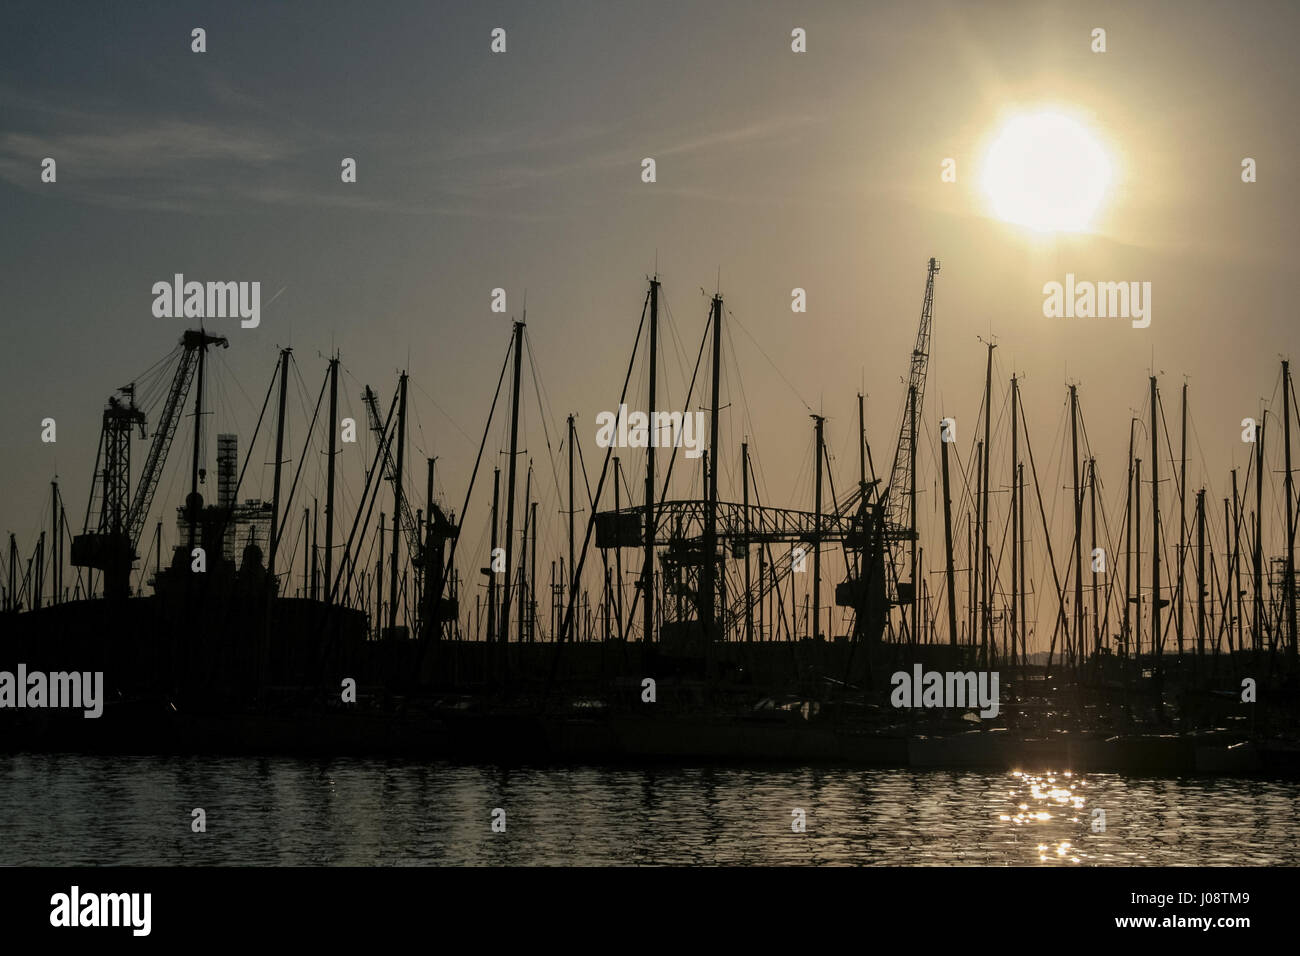 Forme de mâts de bateaux et grues au coucher du soleil dans le port de Toulon, France Photo de bateaux, navires et les grues dans la lumière à la tombée de la nuit dans le port de Toulon, en France. Banque D'Images